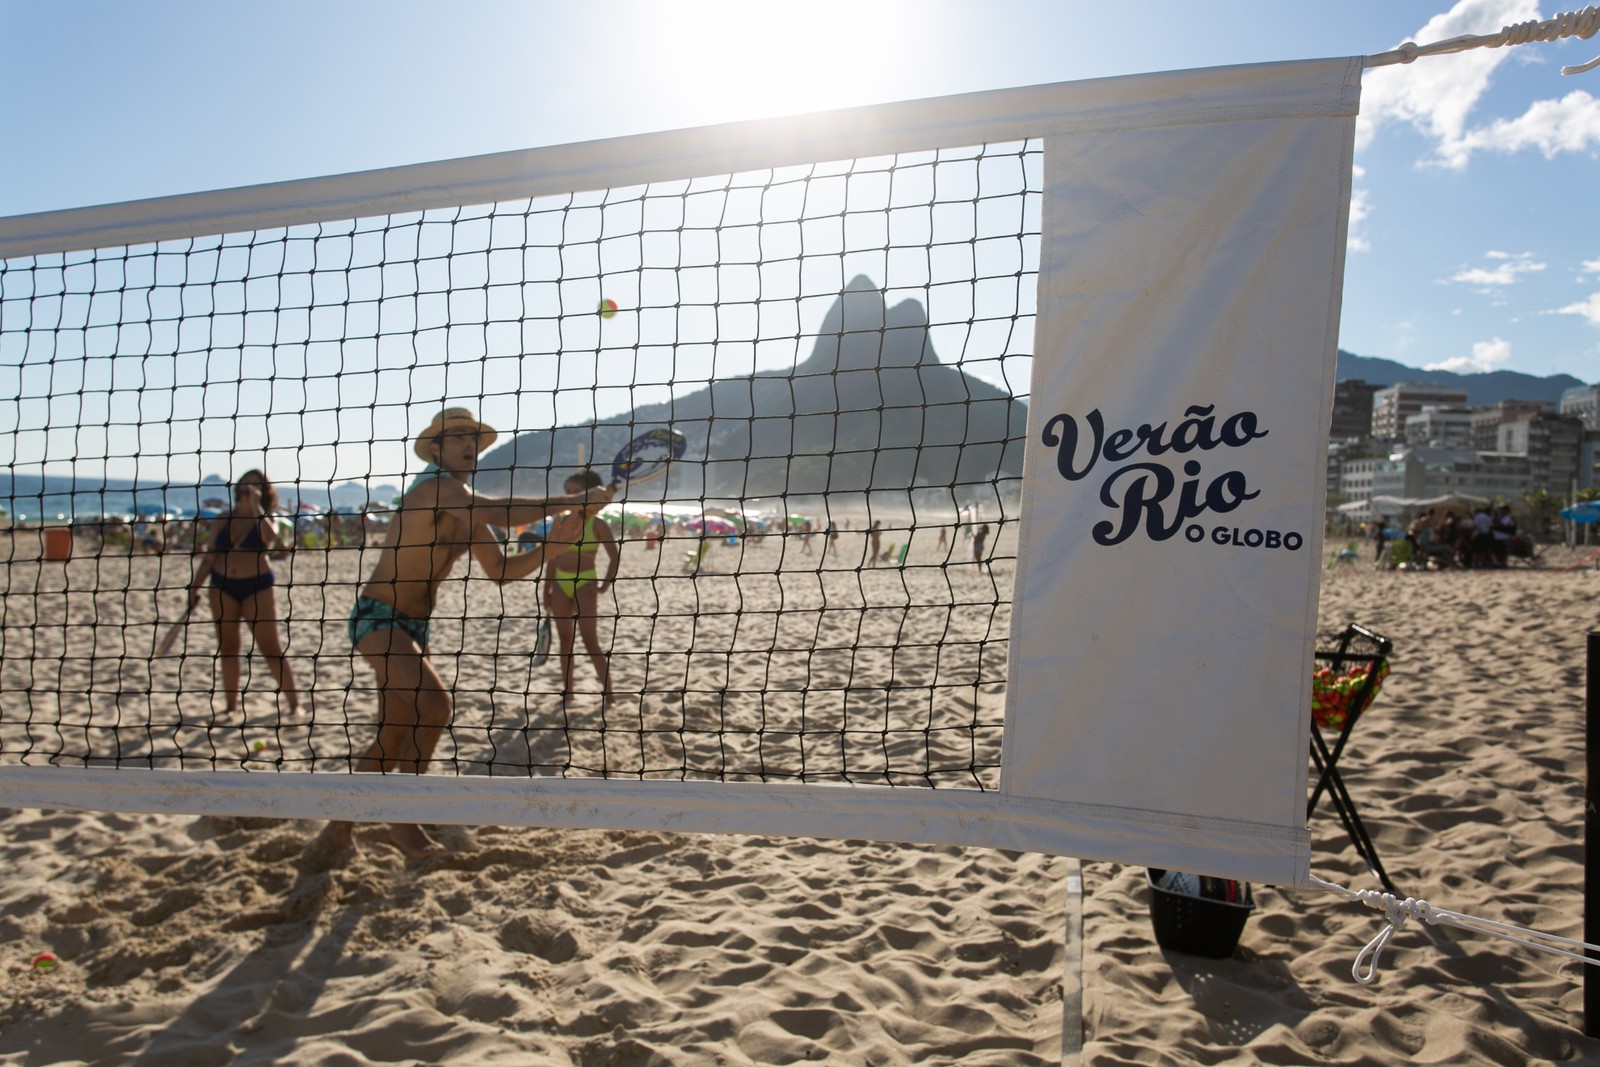 Beach tênis, a febre dos esportes de praia, no Verão Rio